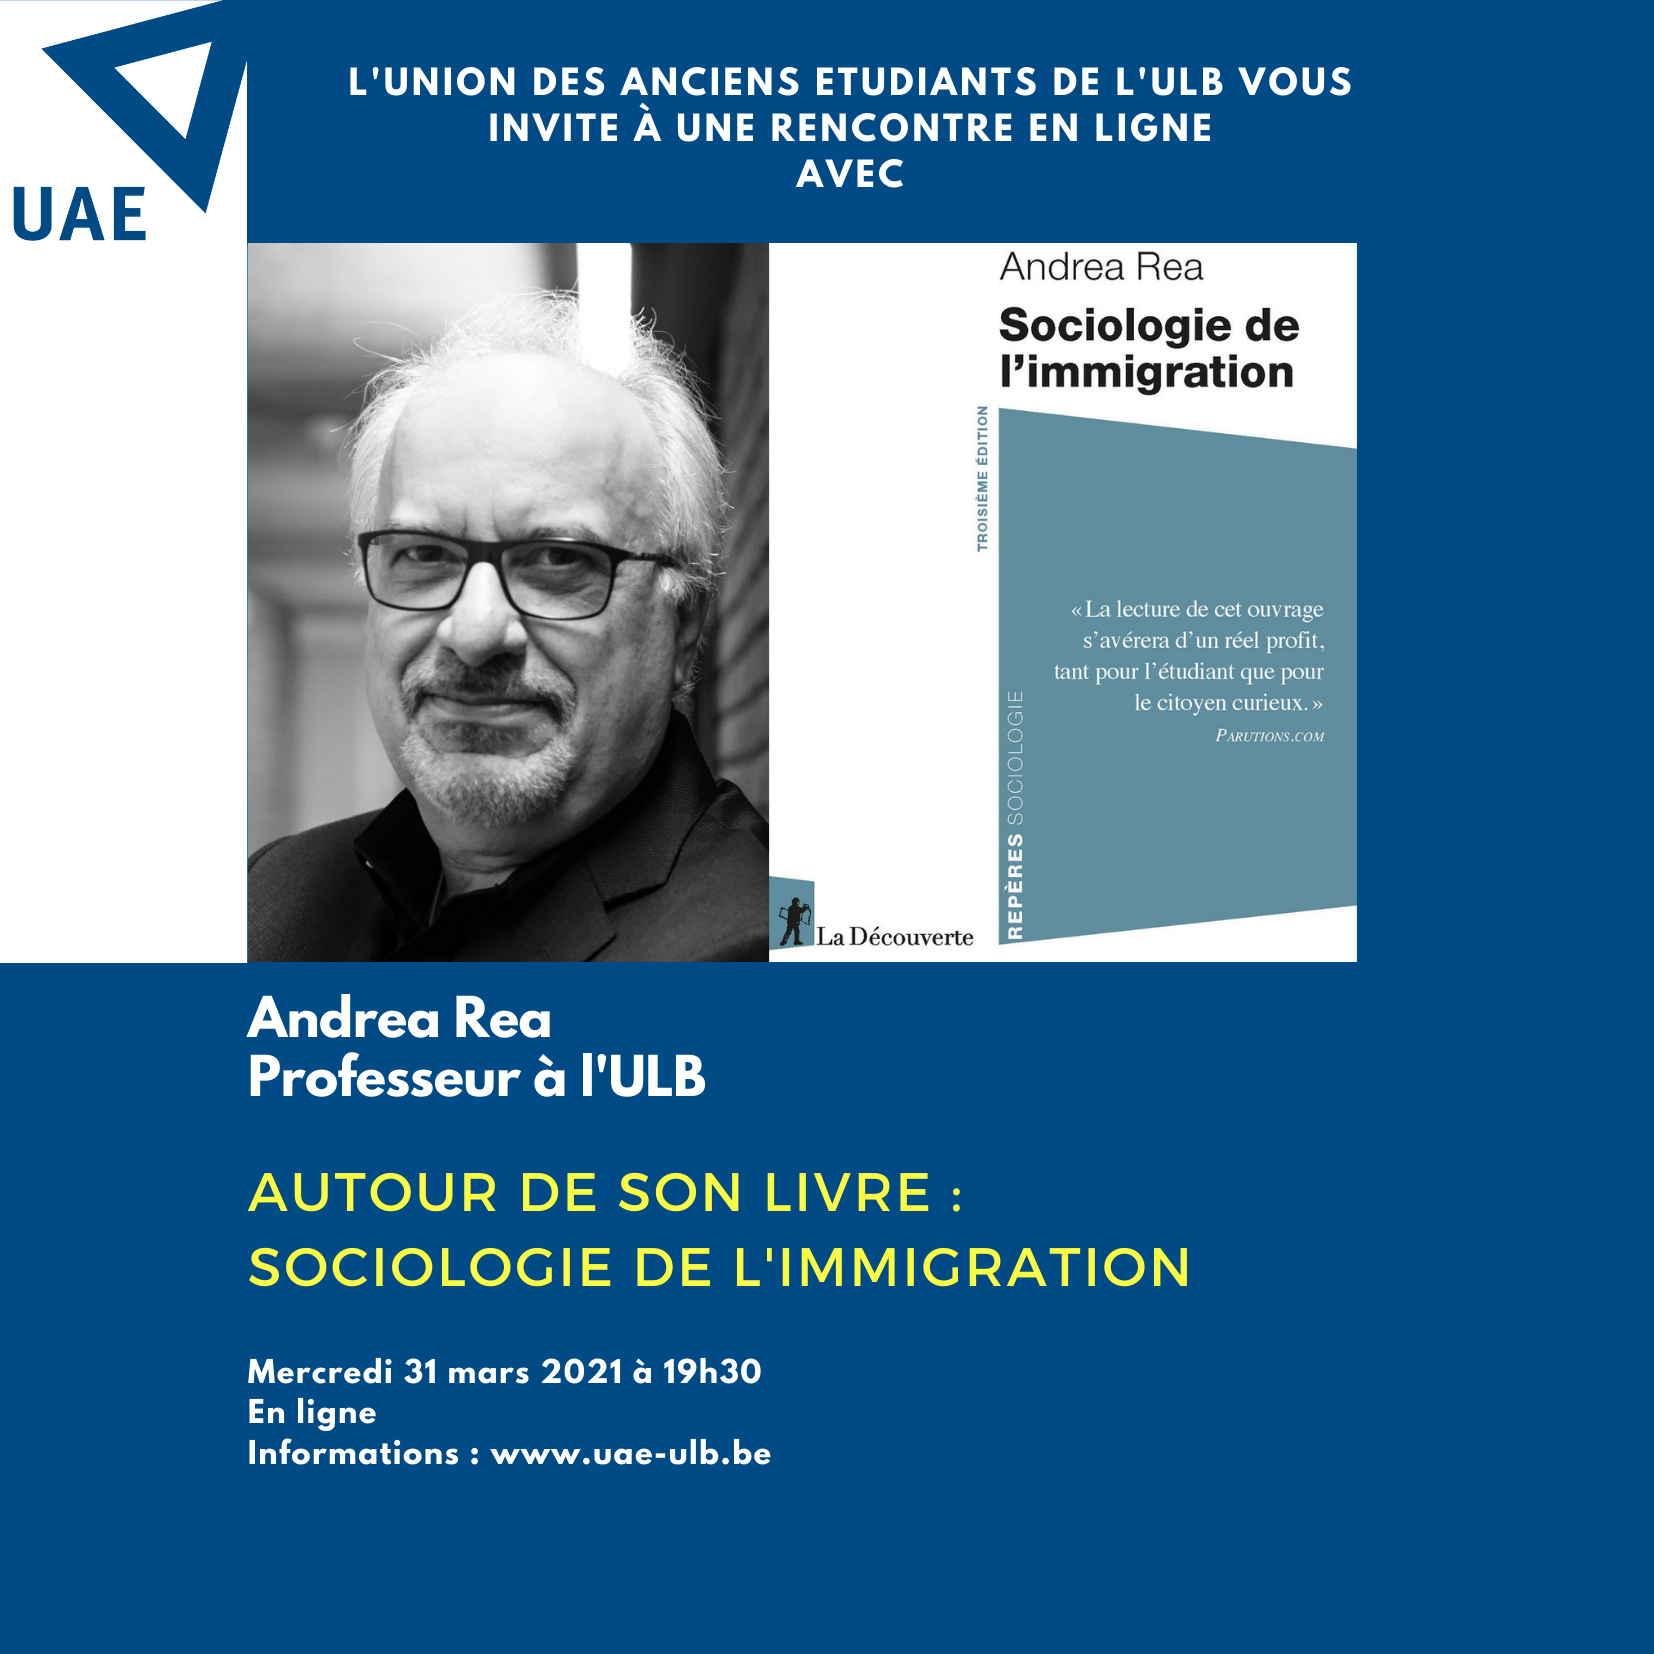 Rencontre en ligne avec Andrea Rea : “Sociologie de l’immigration”.